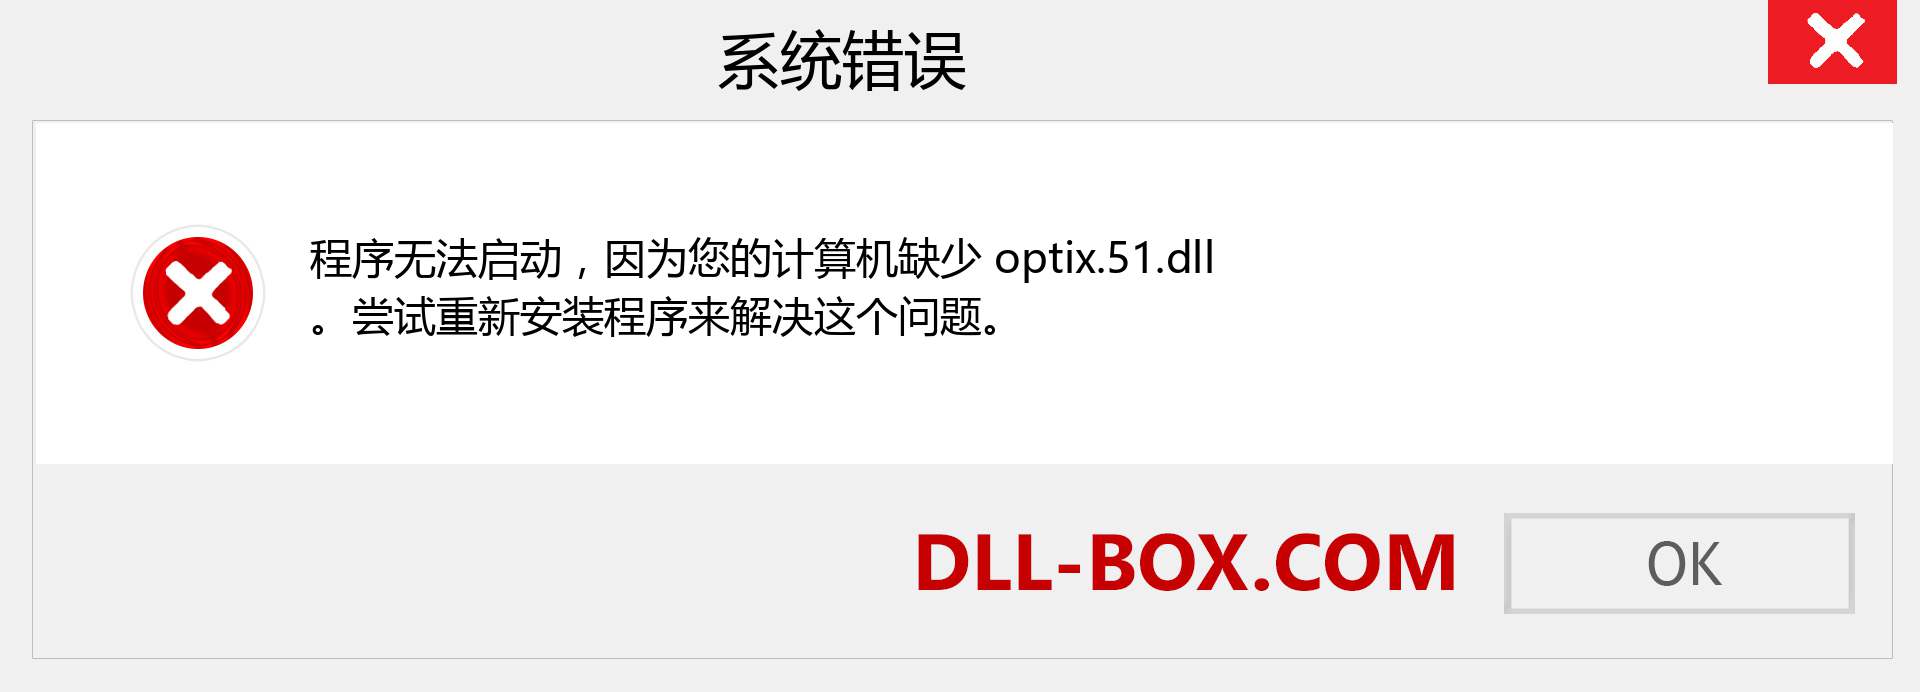 optix.51.dll 文件丢失？。 适用于 Windows 7、8、10 的下载 - 修复 Windows、照片、图像上的 optix.51 dll 丢失错误